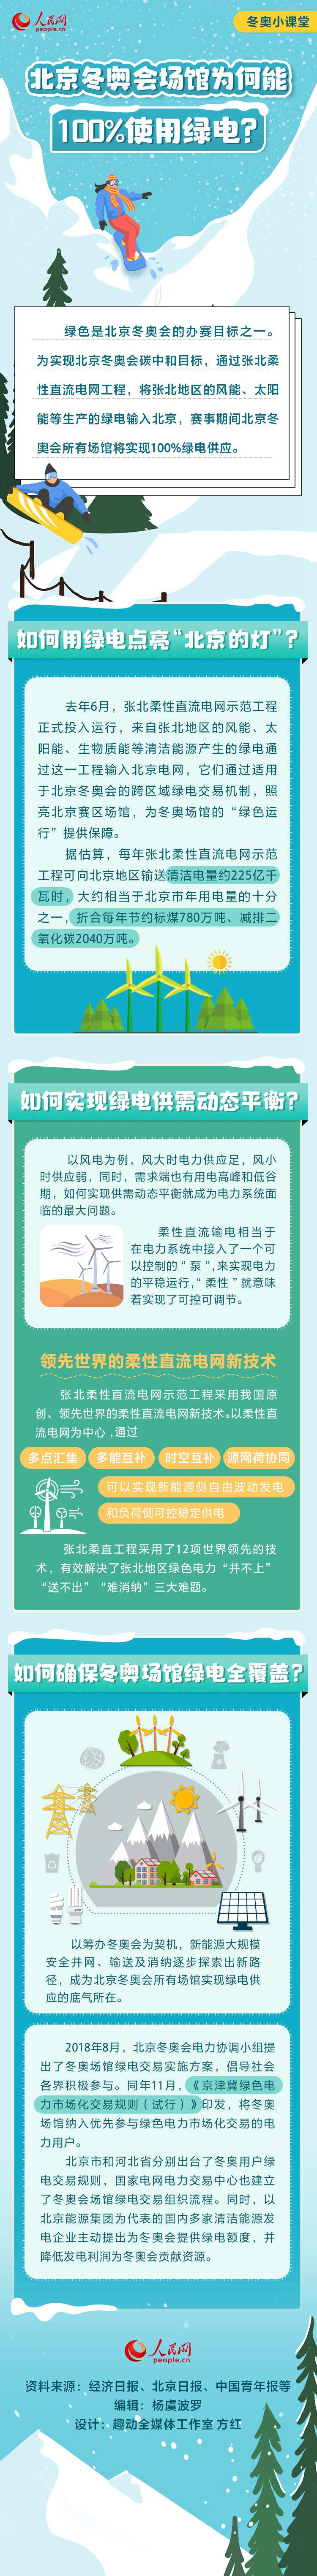 北京冬奥会场馆为何能100%使用绿电？